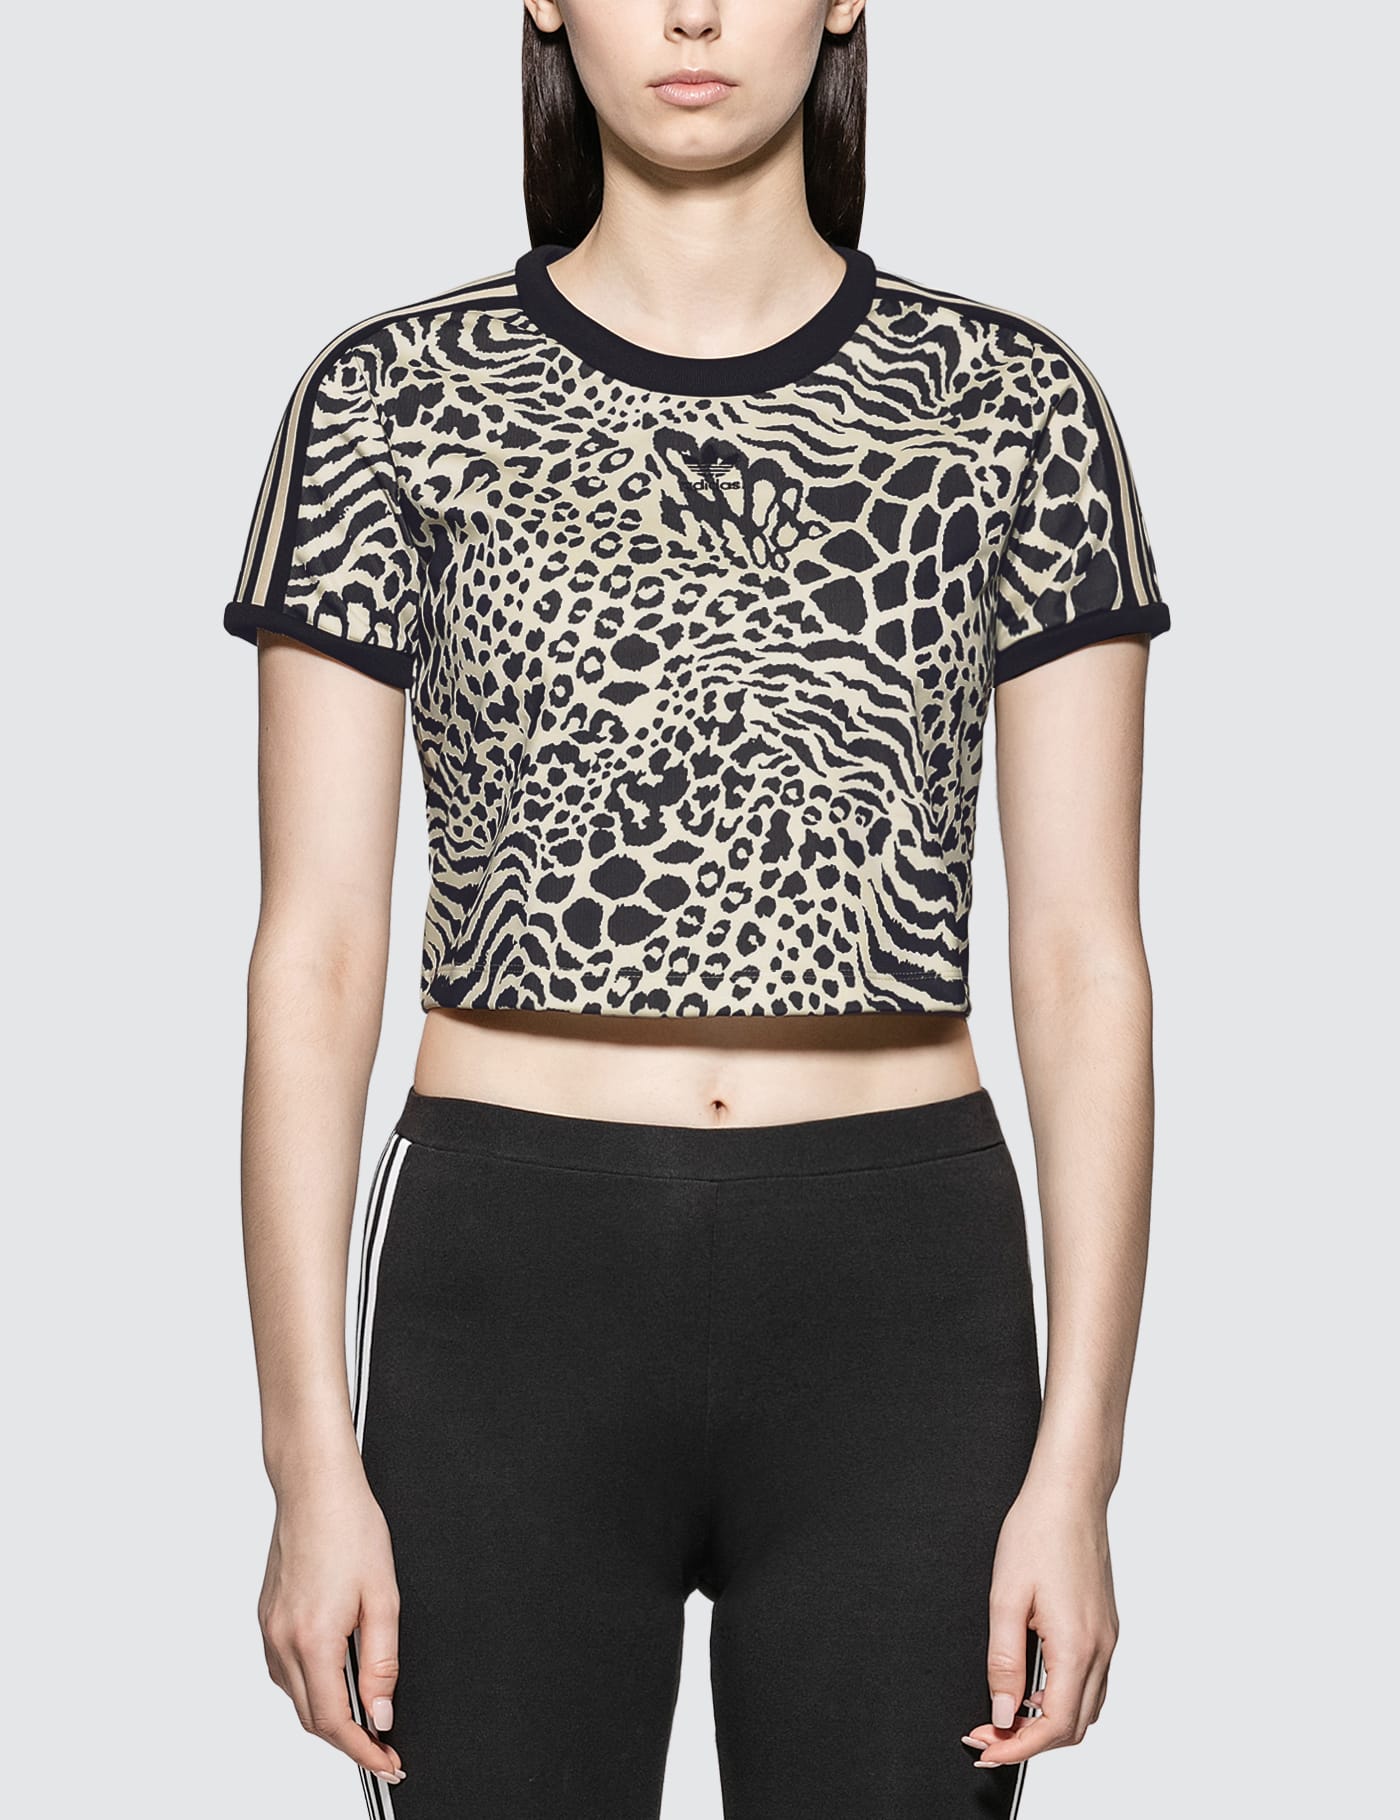 Adidas Originals - Leopard Print 3 